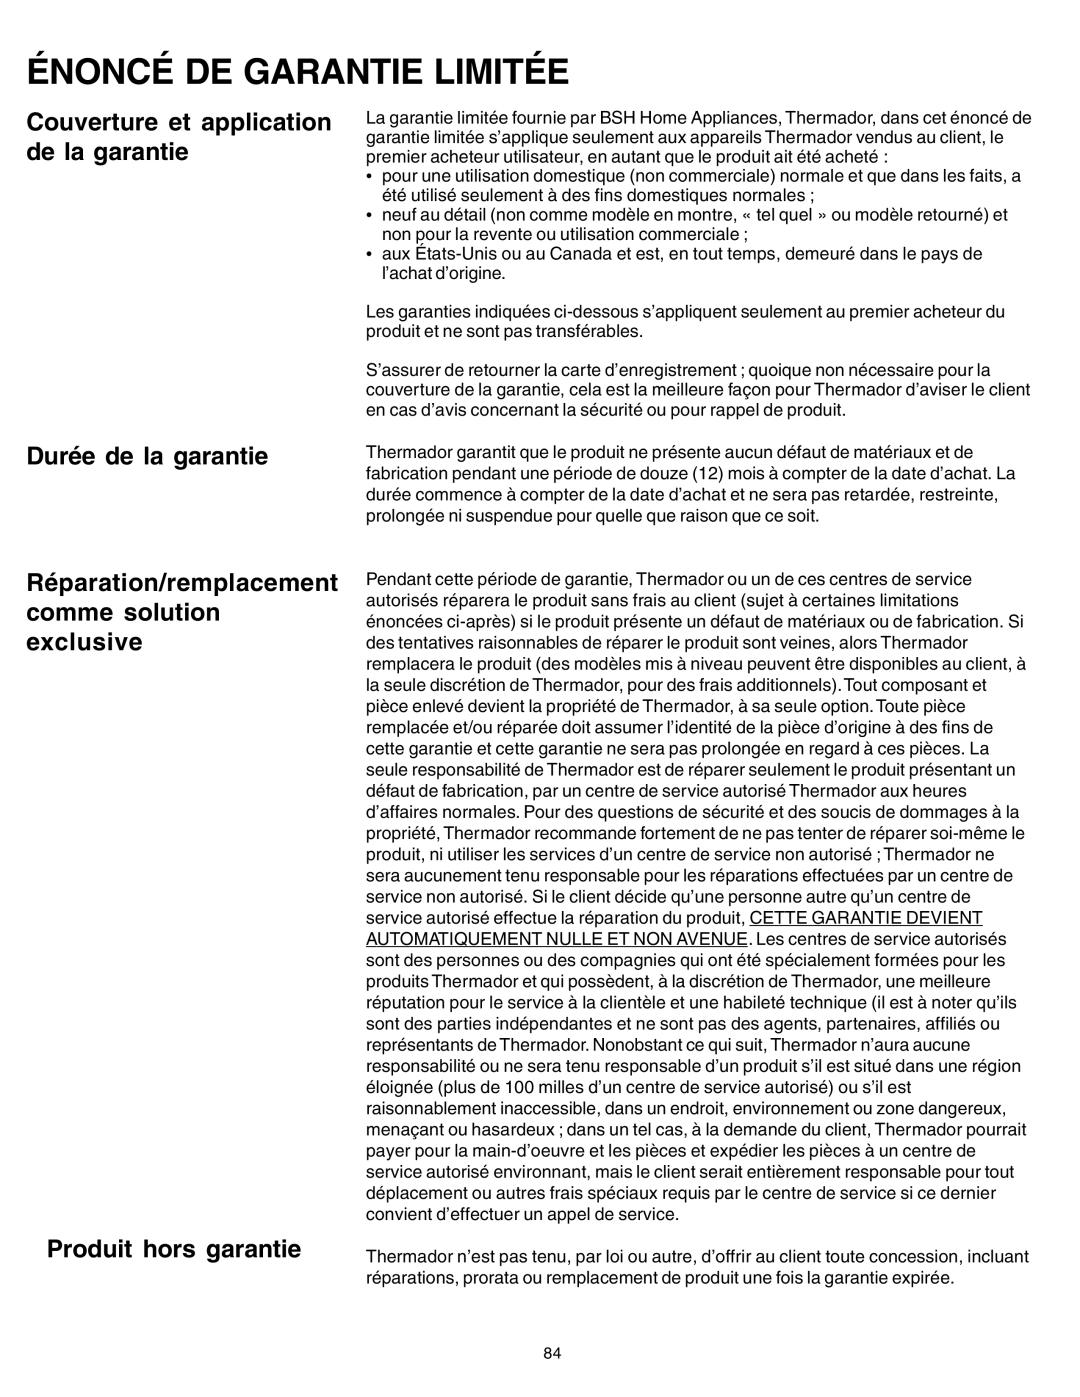 Thermador PRG30, PRG36 manual Énoncé De Garantie Limitée, Couverture et application de la garantie Durée de la garantie 